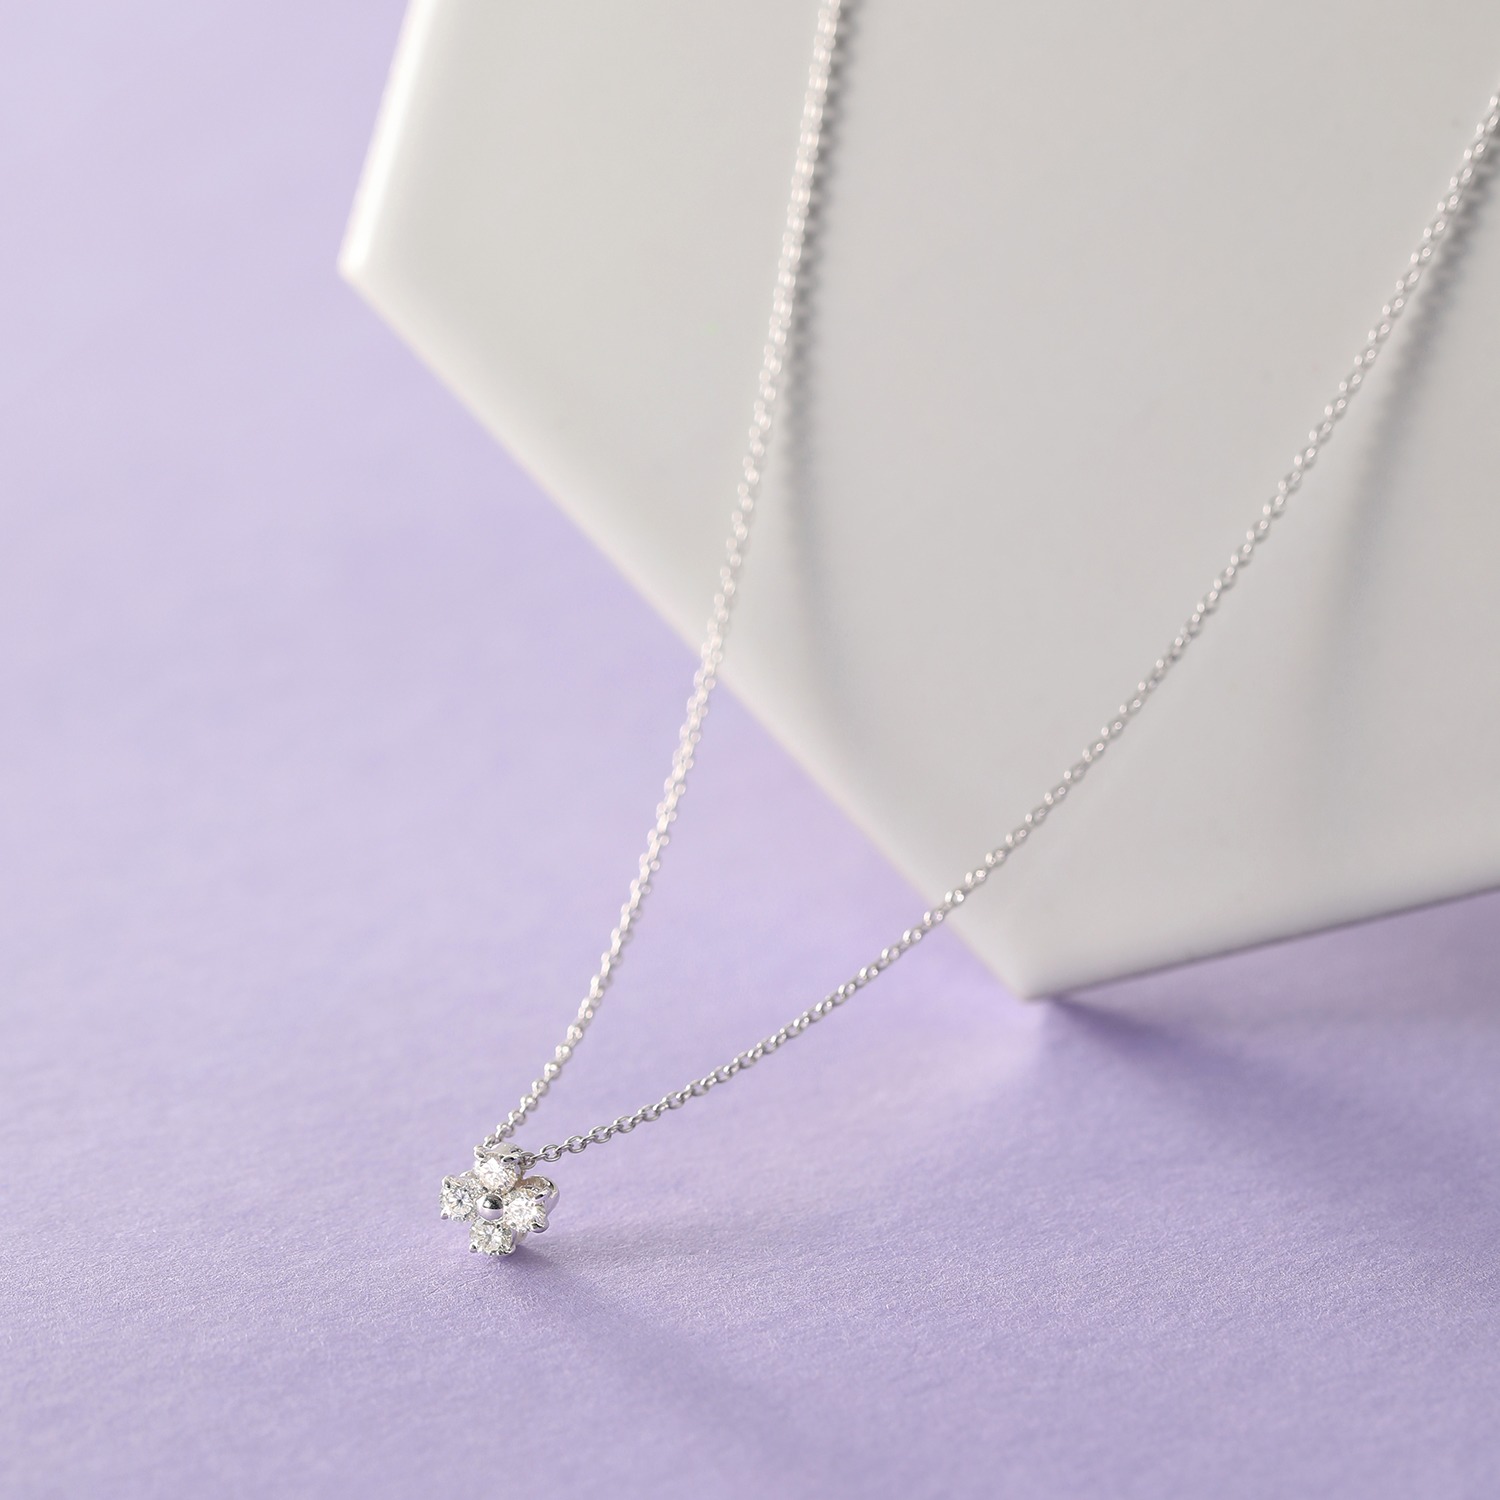 ソルジェ ダイヤモンド 軽やかに装う 正統派のクローバー プティネックレス